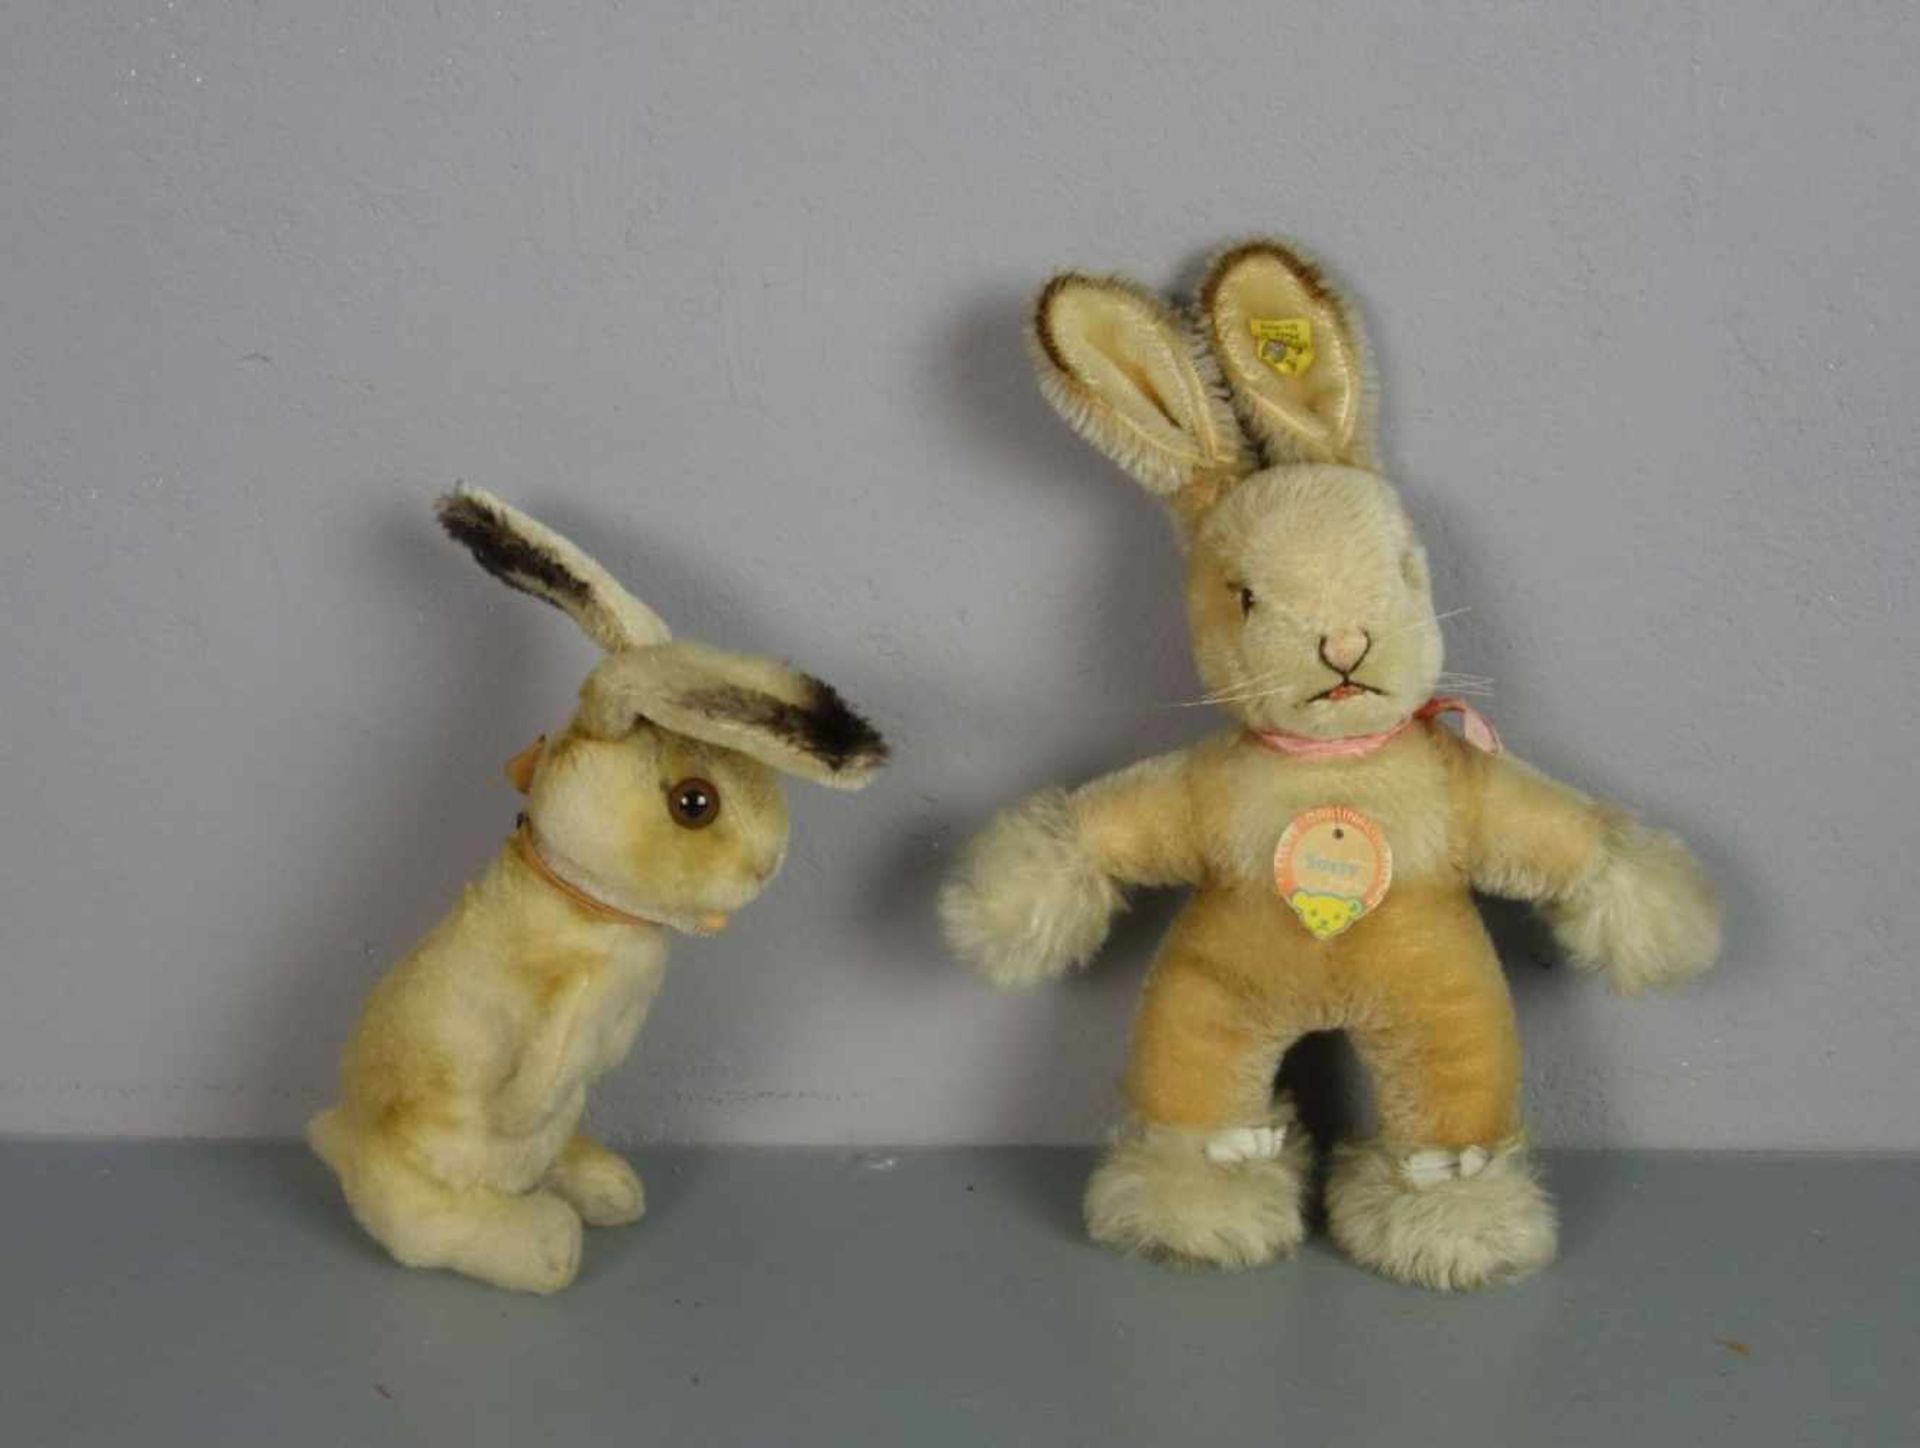 PLÜSCHTIERE / PLÜSCHFIGUREN: 2 Steiff Hasen / two fluffy toy rabbits, 20. Jh., Manufaktur Steiff,